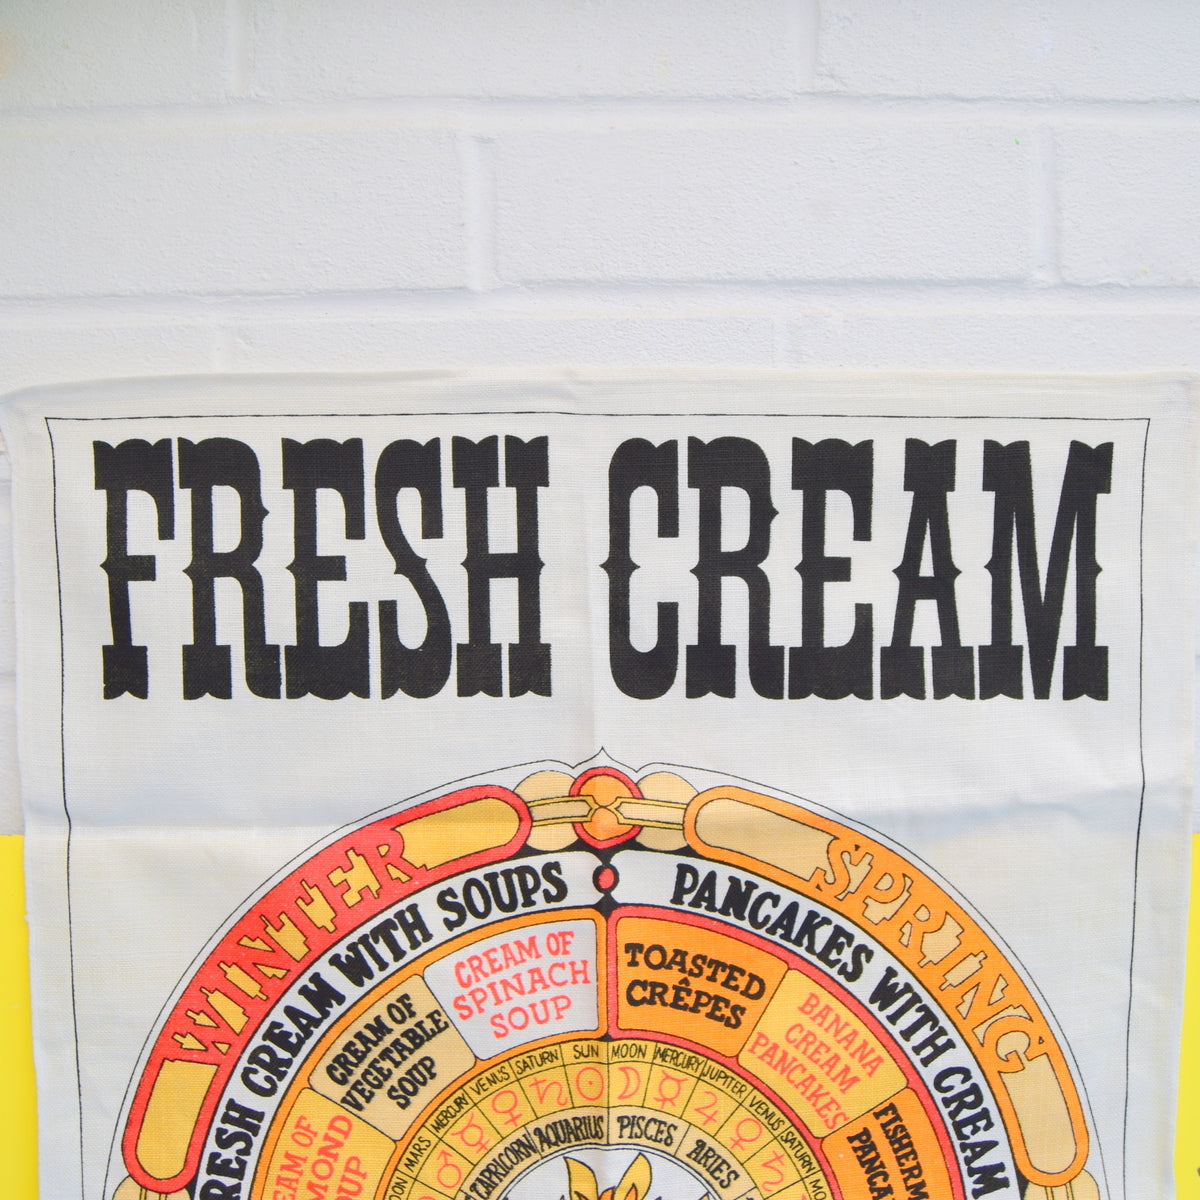 Vintage 1960s Unused Cotton Tea Towel - Fresh Cream